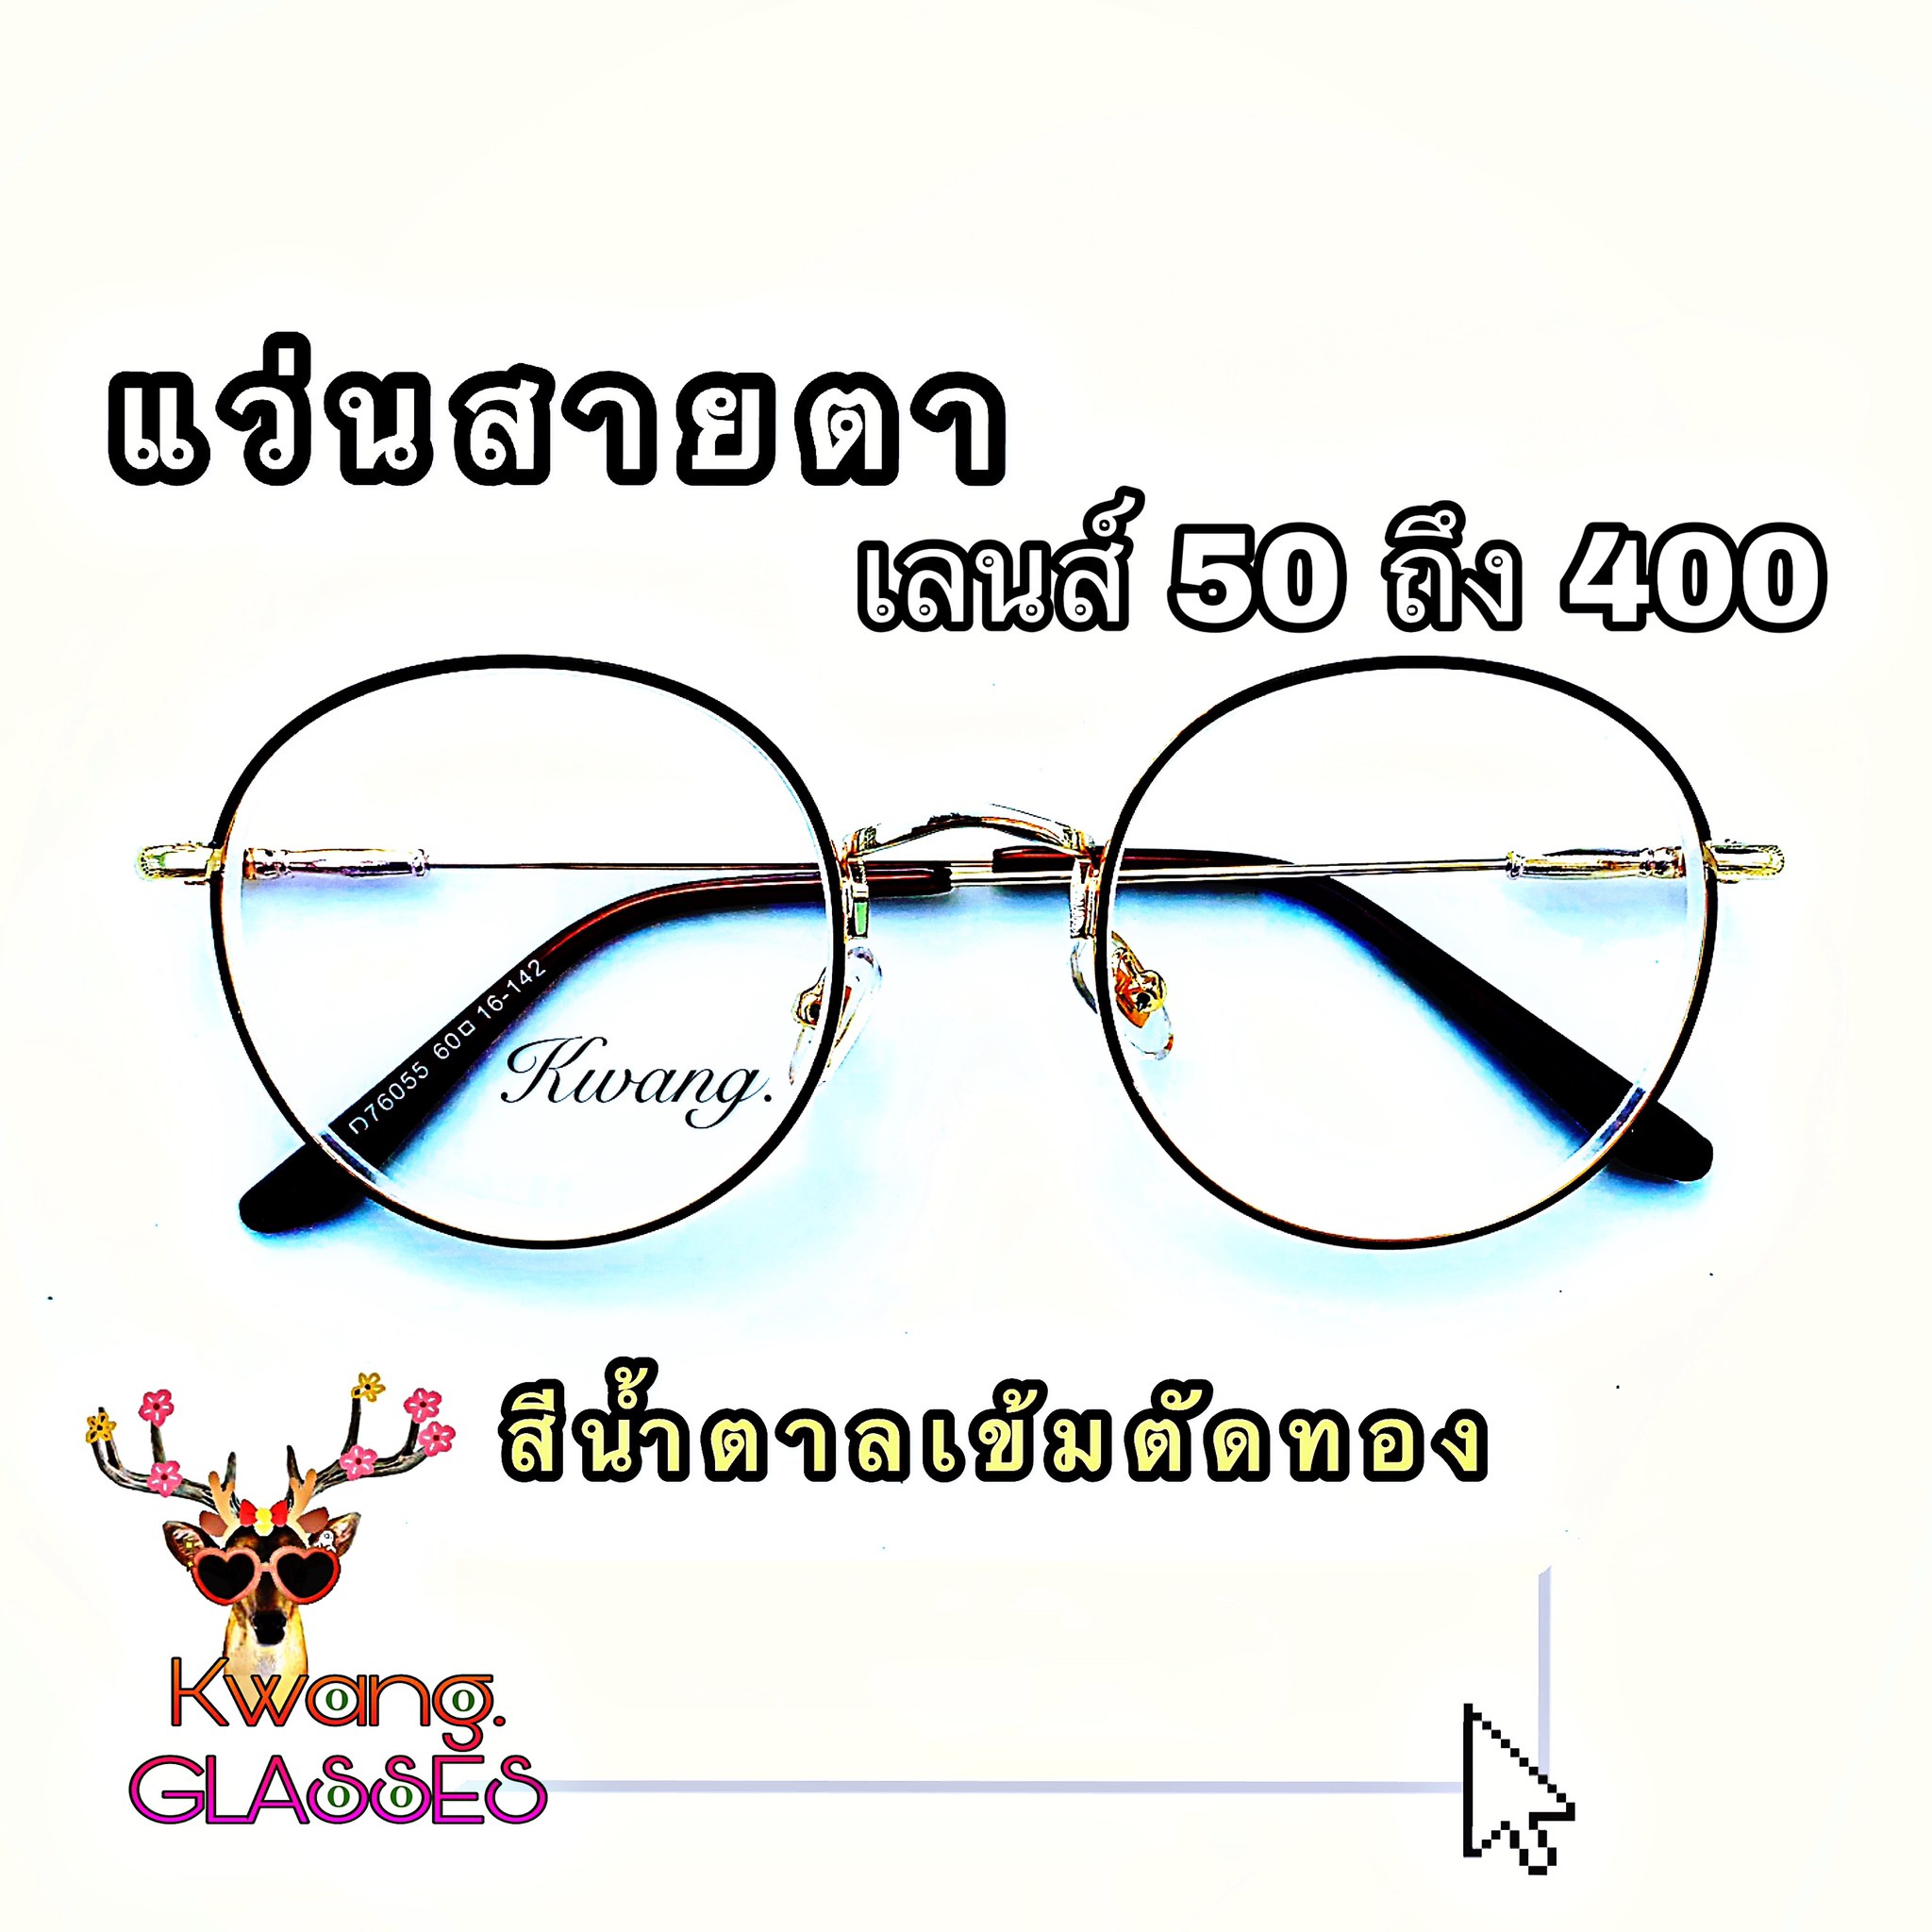 Kwang แว่นสีน้ำตาล แว่นสายตา แว่นทรงหยดน้ำ แว่นสายตายาวและสั้น มีตั้งแต่เลนส์ 50 ถึง 400 กดเลือกเลนส์ได้เลย งานหรูมาก(กรอบพร้อมเลนส์สายตา)